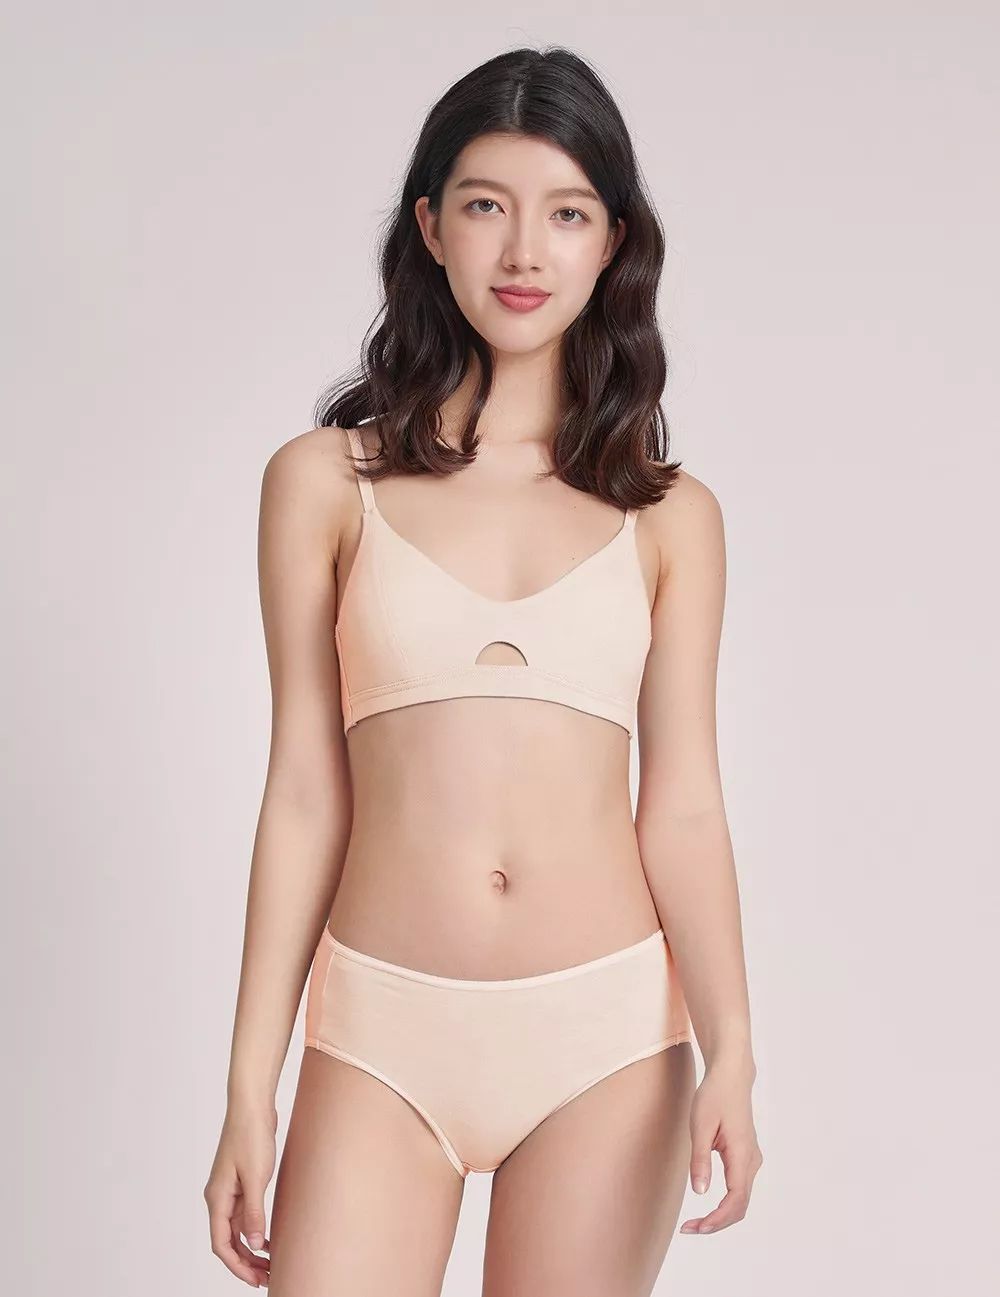 专为亚洲女性胸型设计 合身不跑杯 这件无钢圈内衣真好穿 一条微信公众号文章